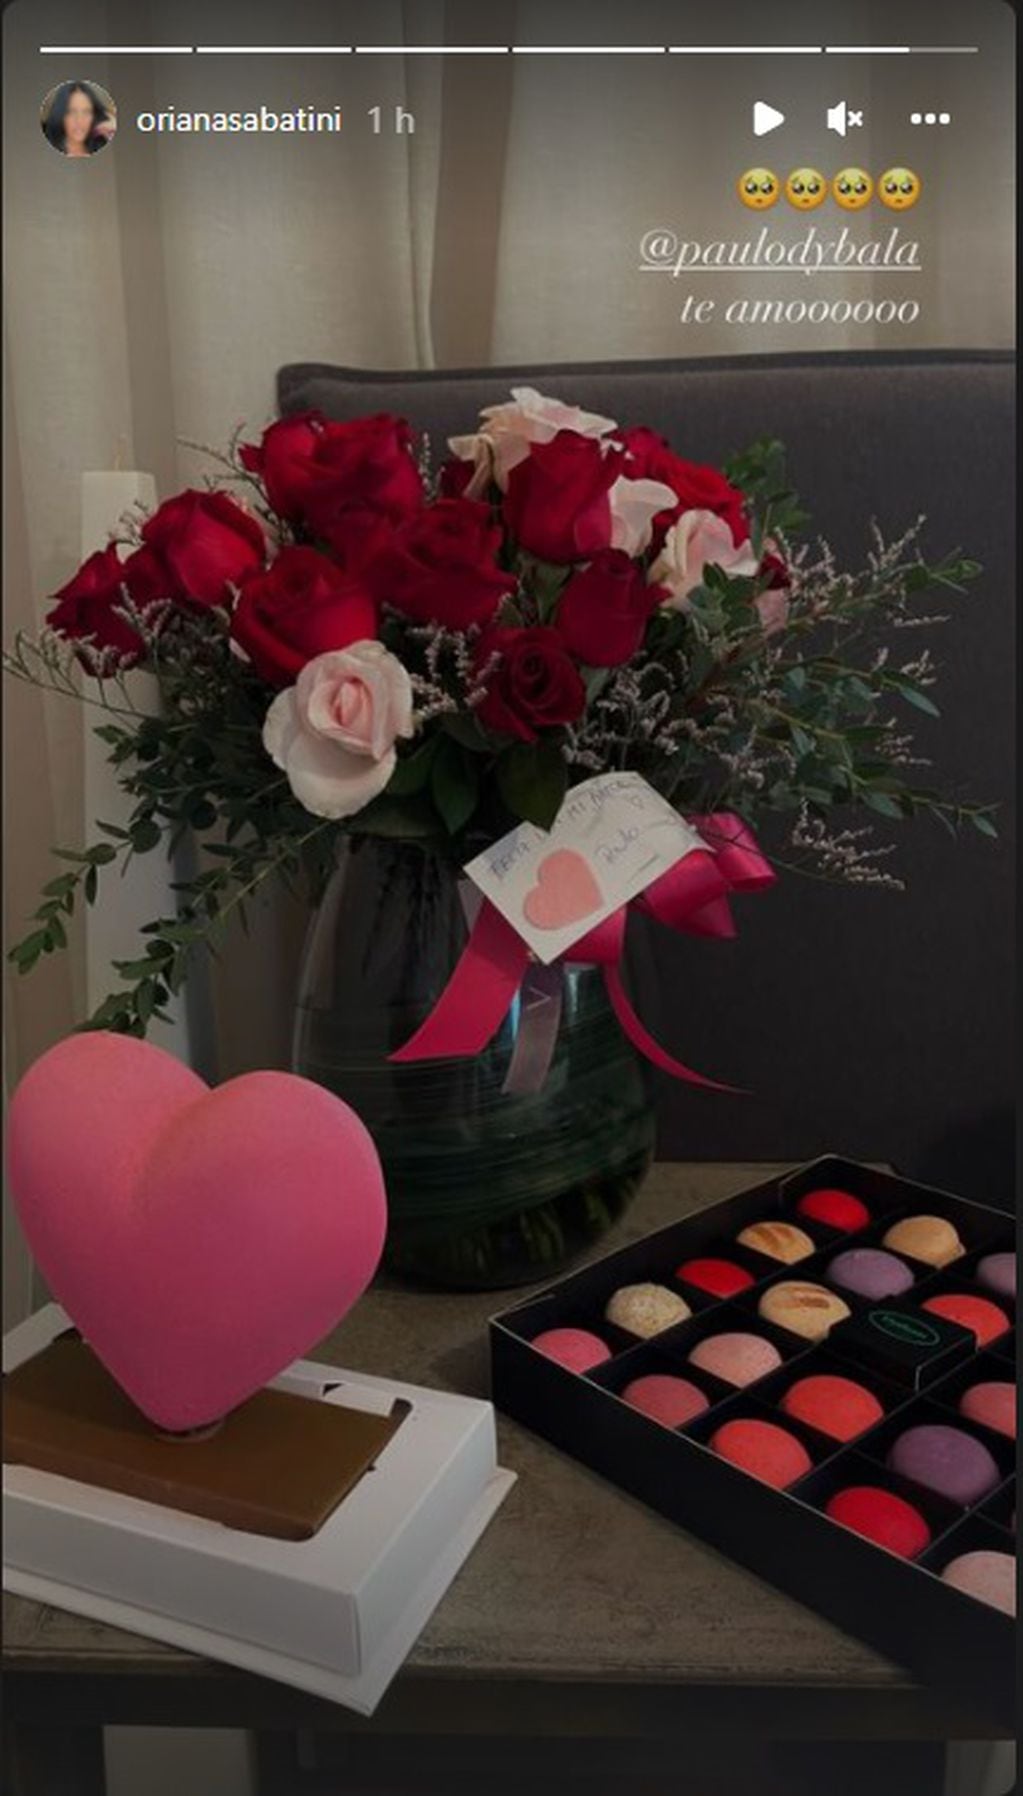 El regalo de Paulo Dybala a Oriana Sabatini por San Valentín.